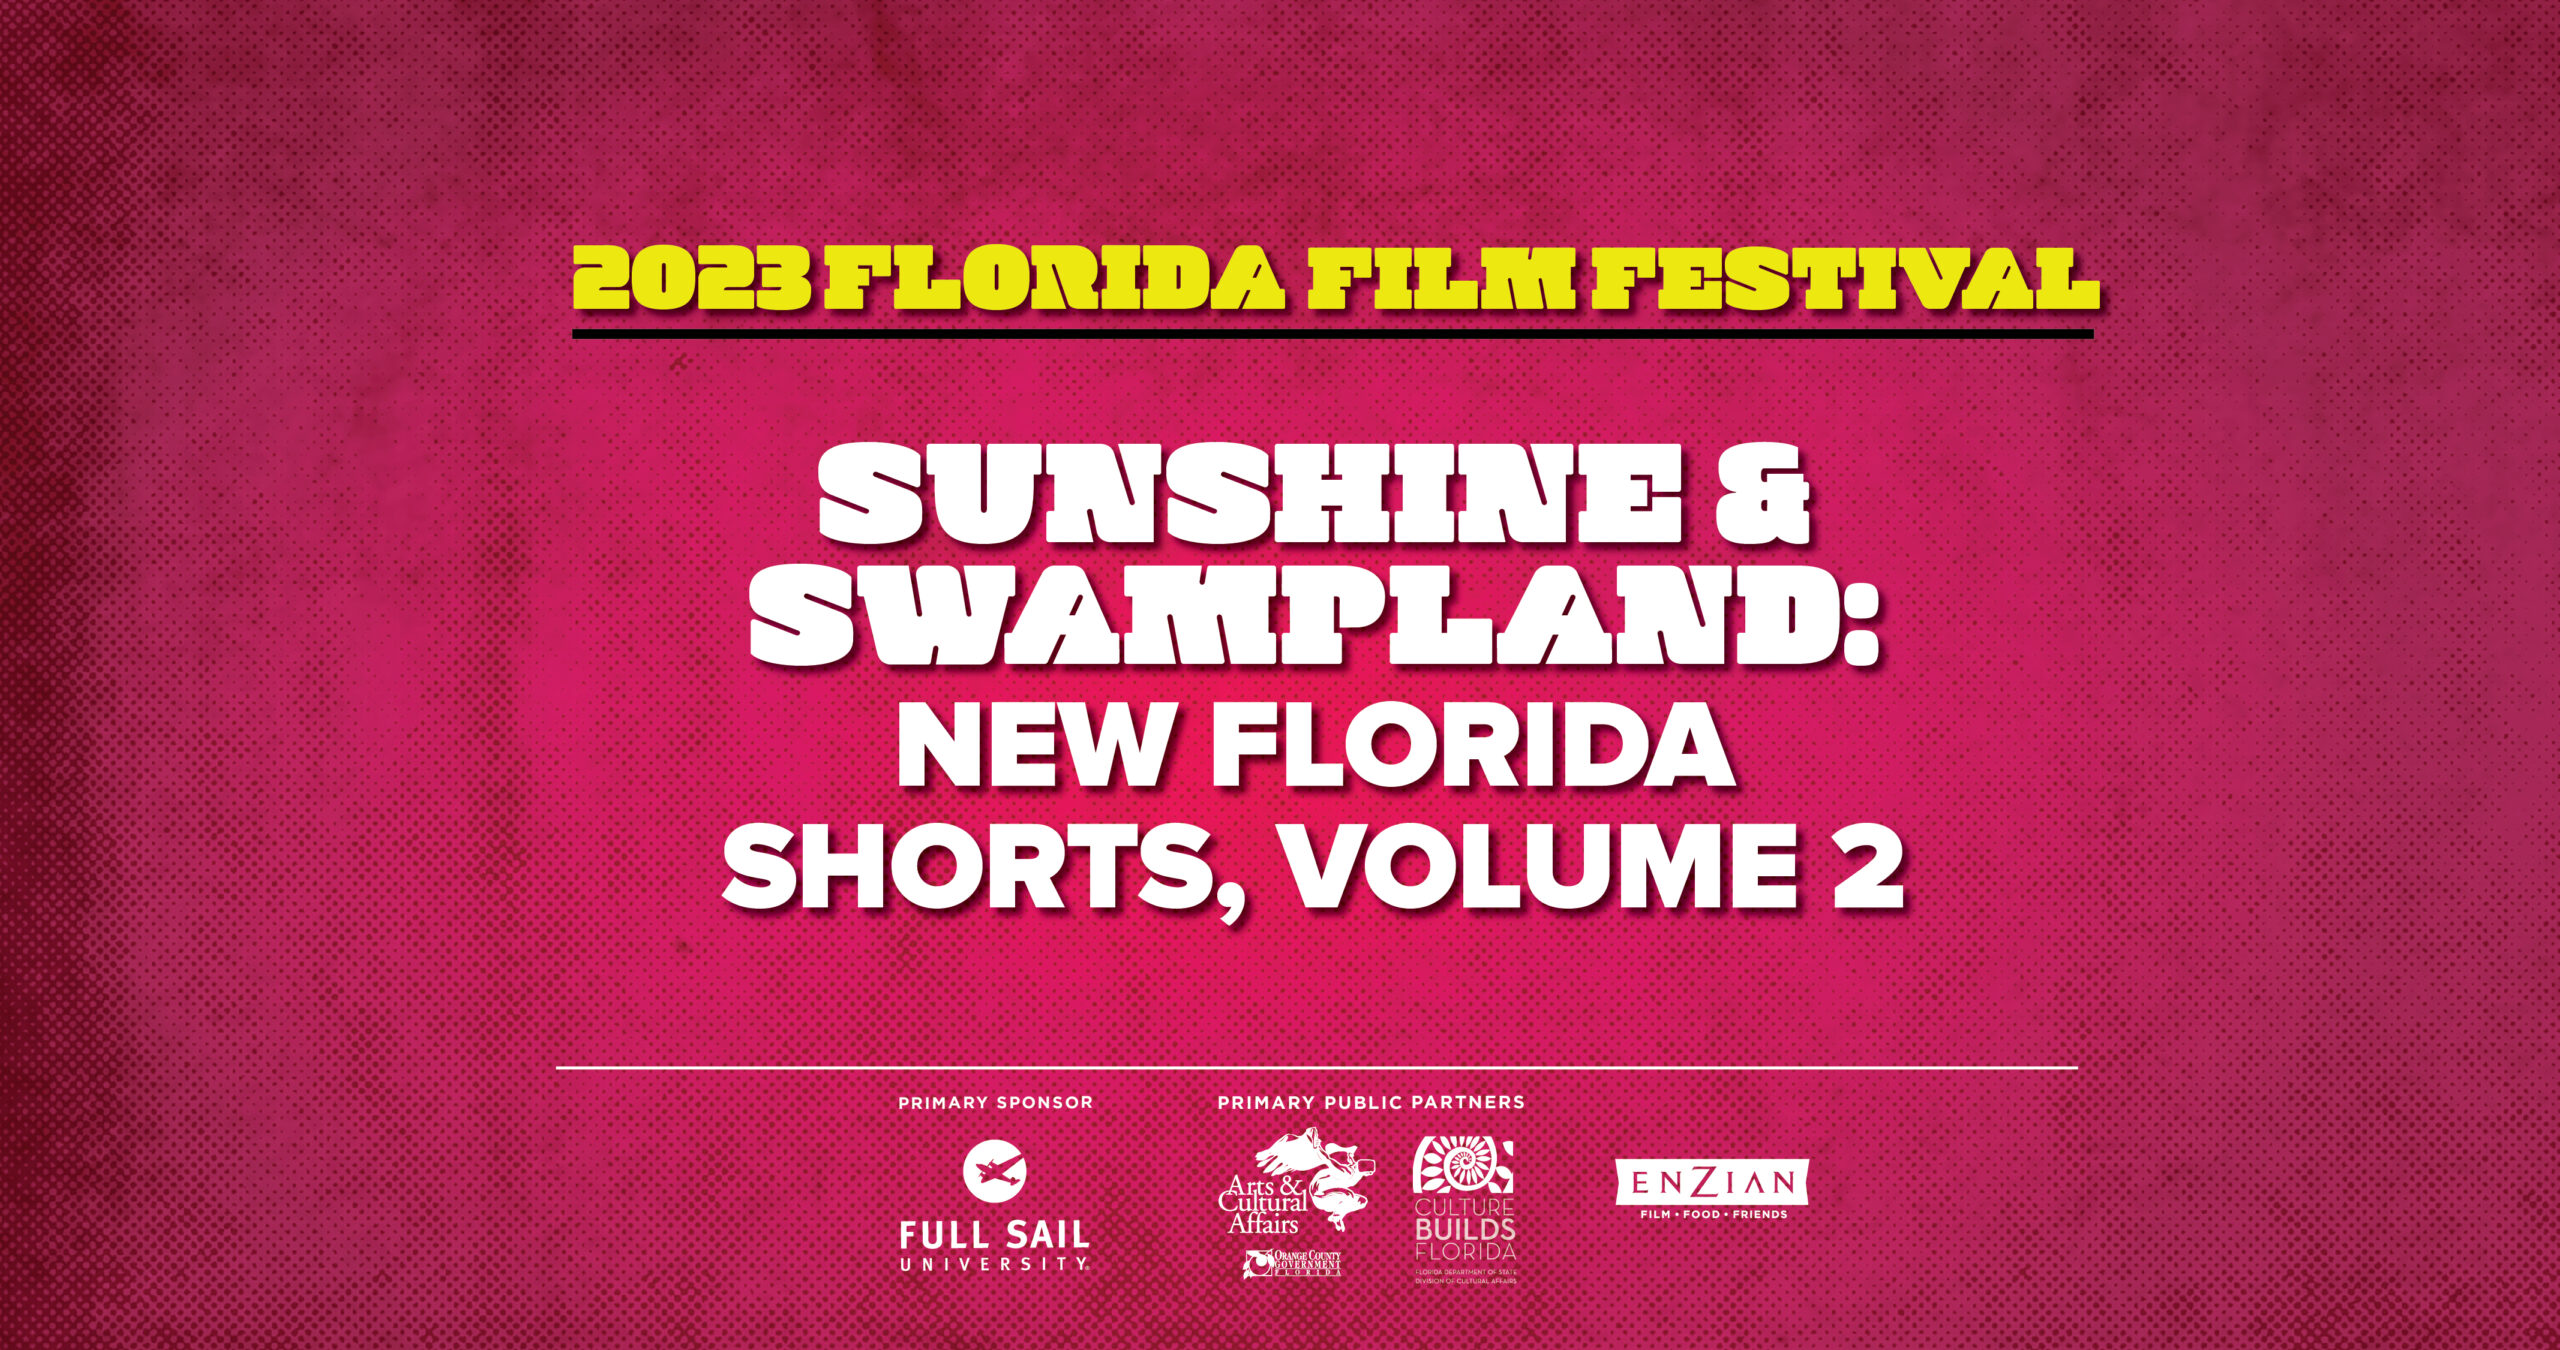 Sunshine & Swampland: New Florida Shorts, Volume 2